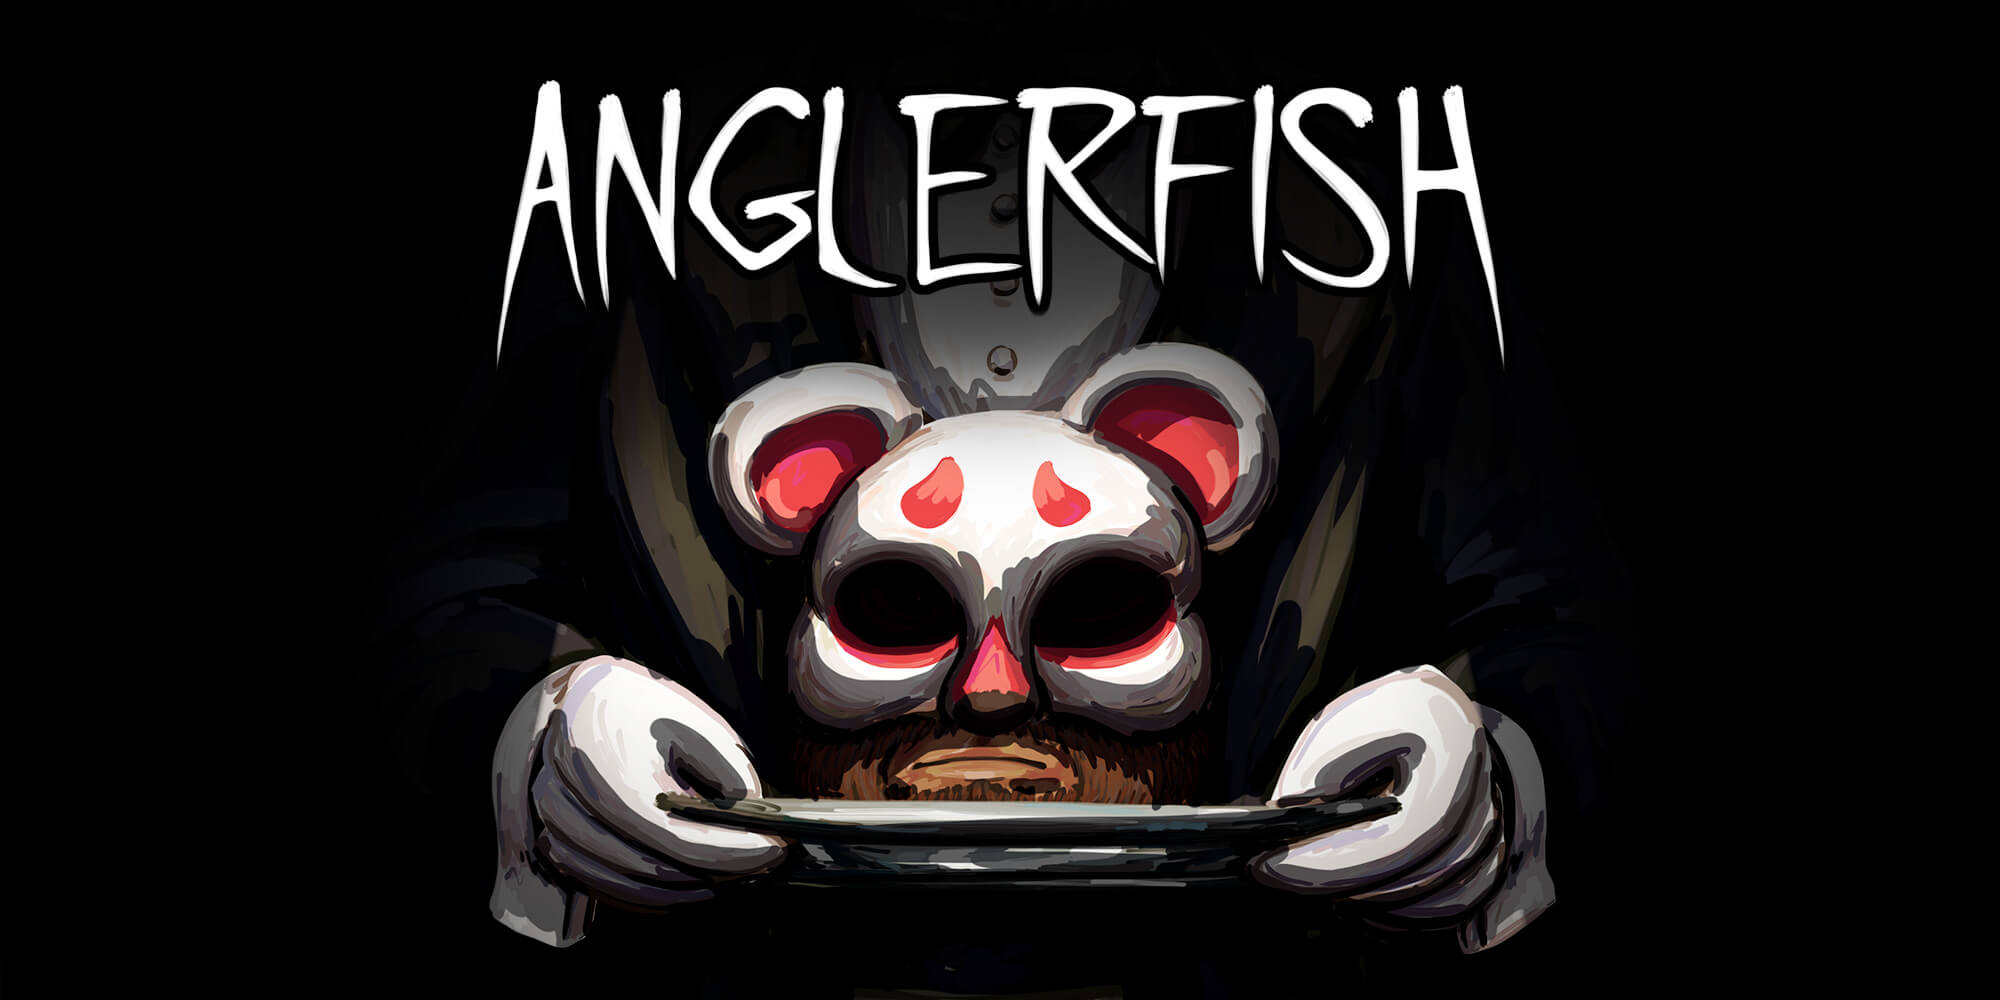 Anglerfish Banner Image